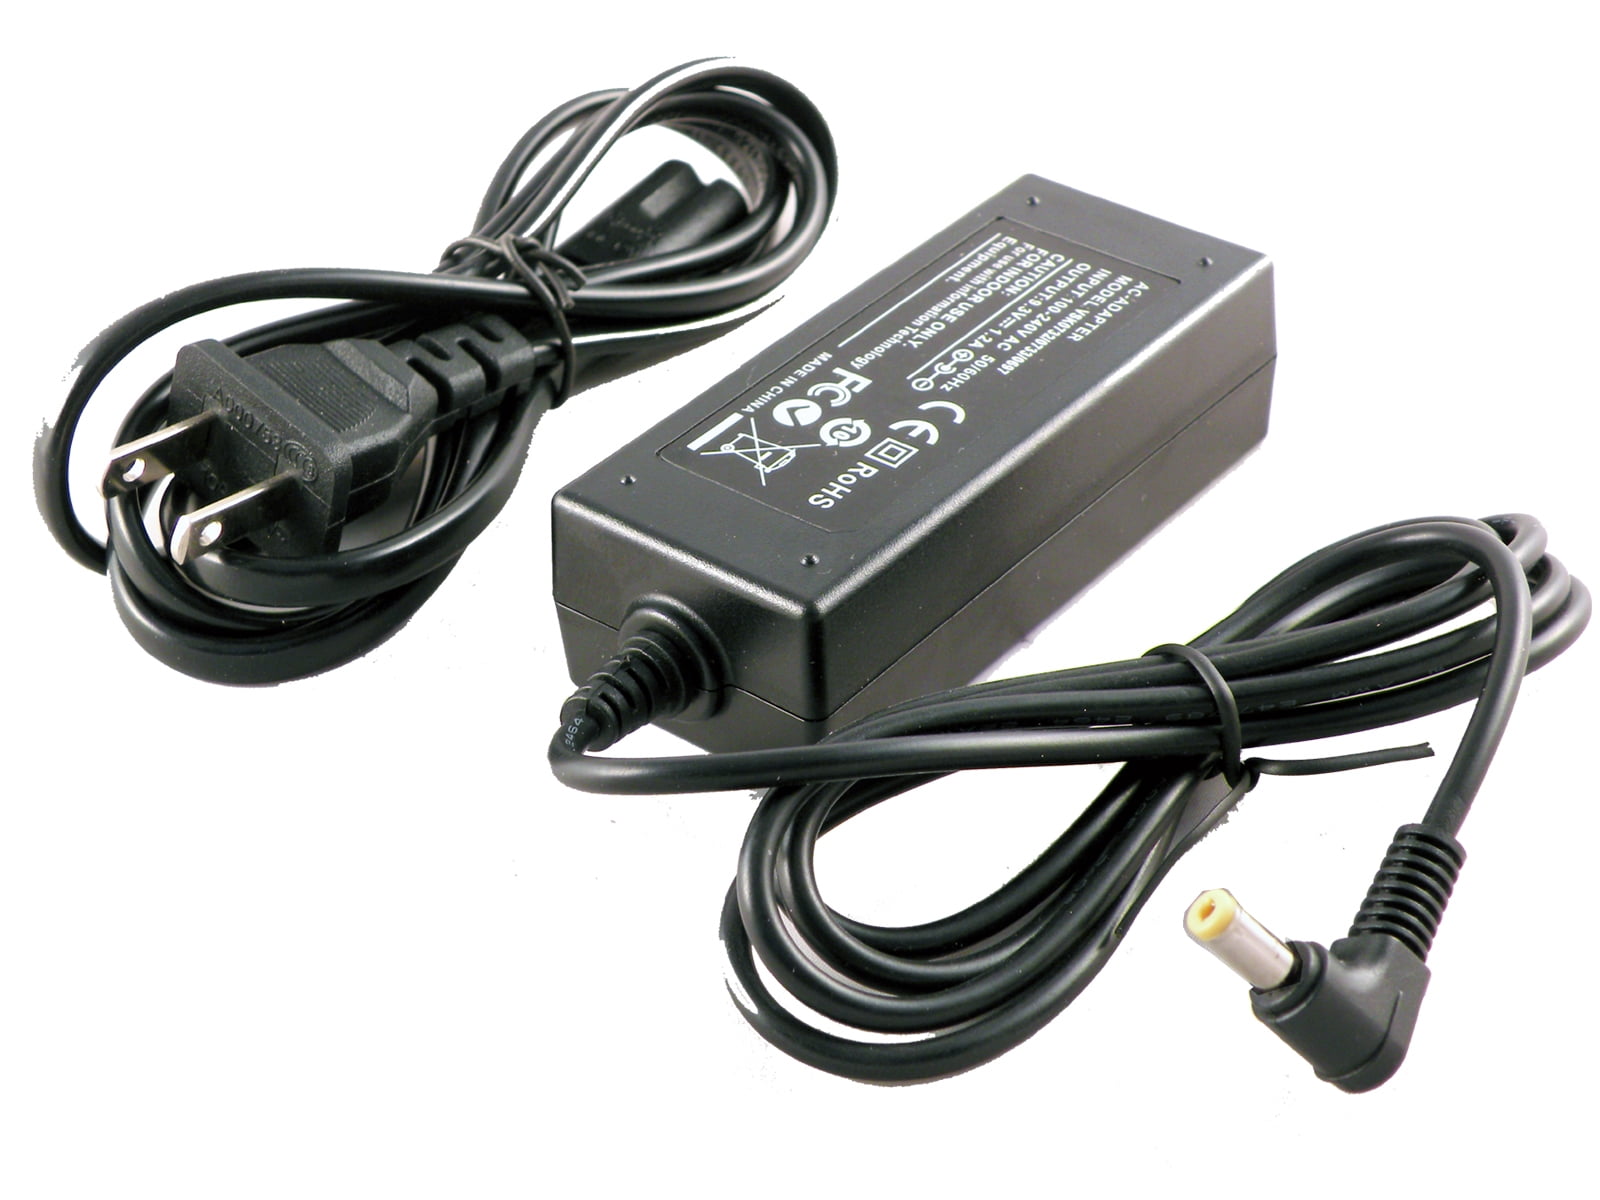 HDC-HS900 P @ Ex-Pro ® AC adaptador de alimentación de red para videocámaras HDC-HS800 